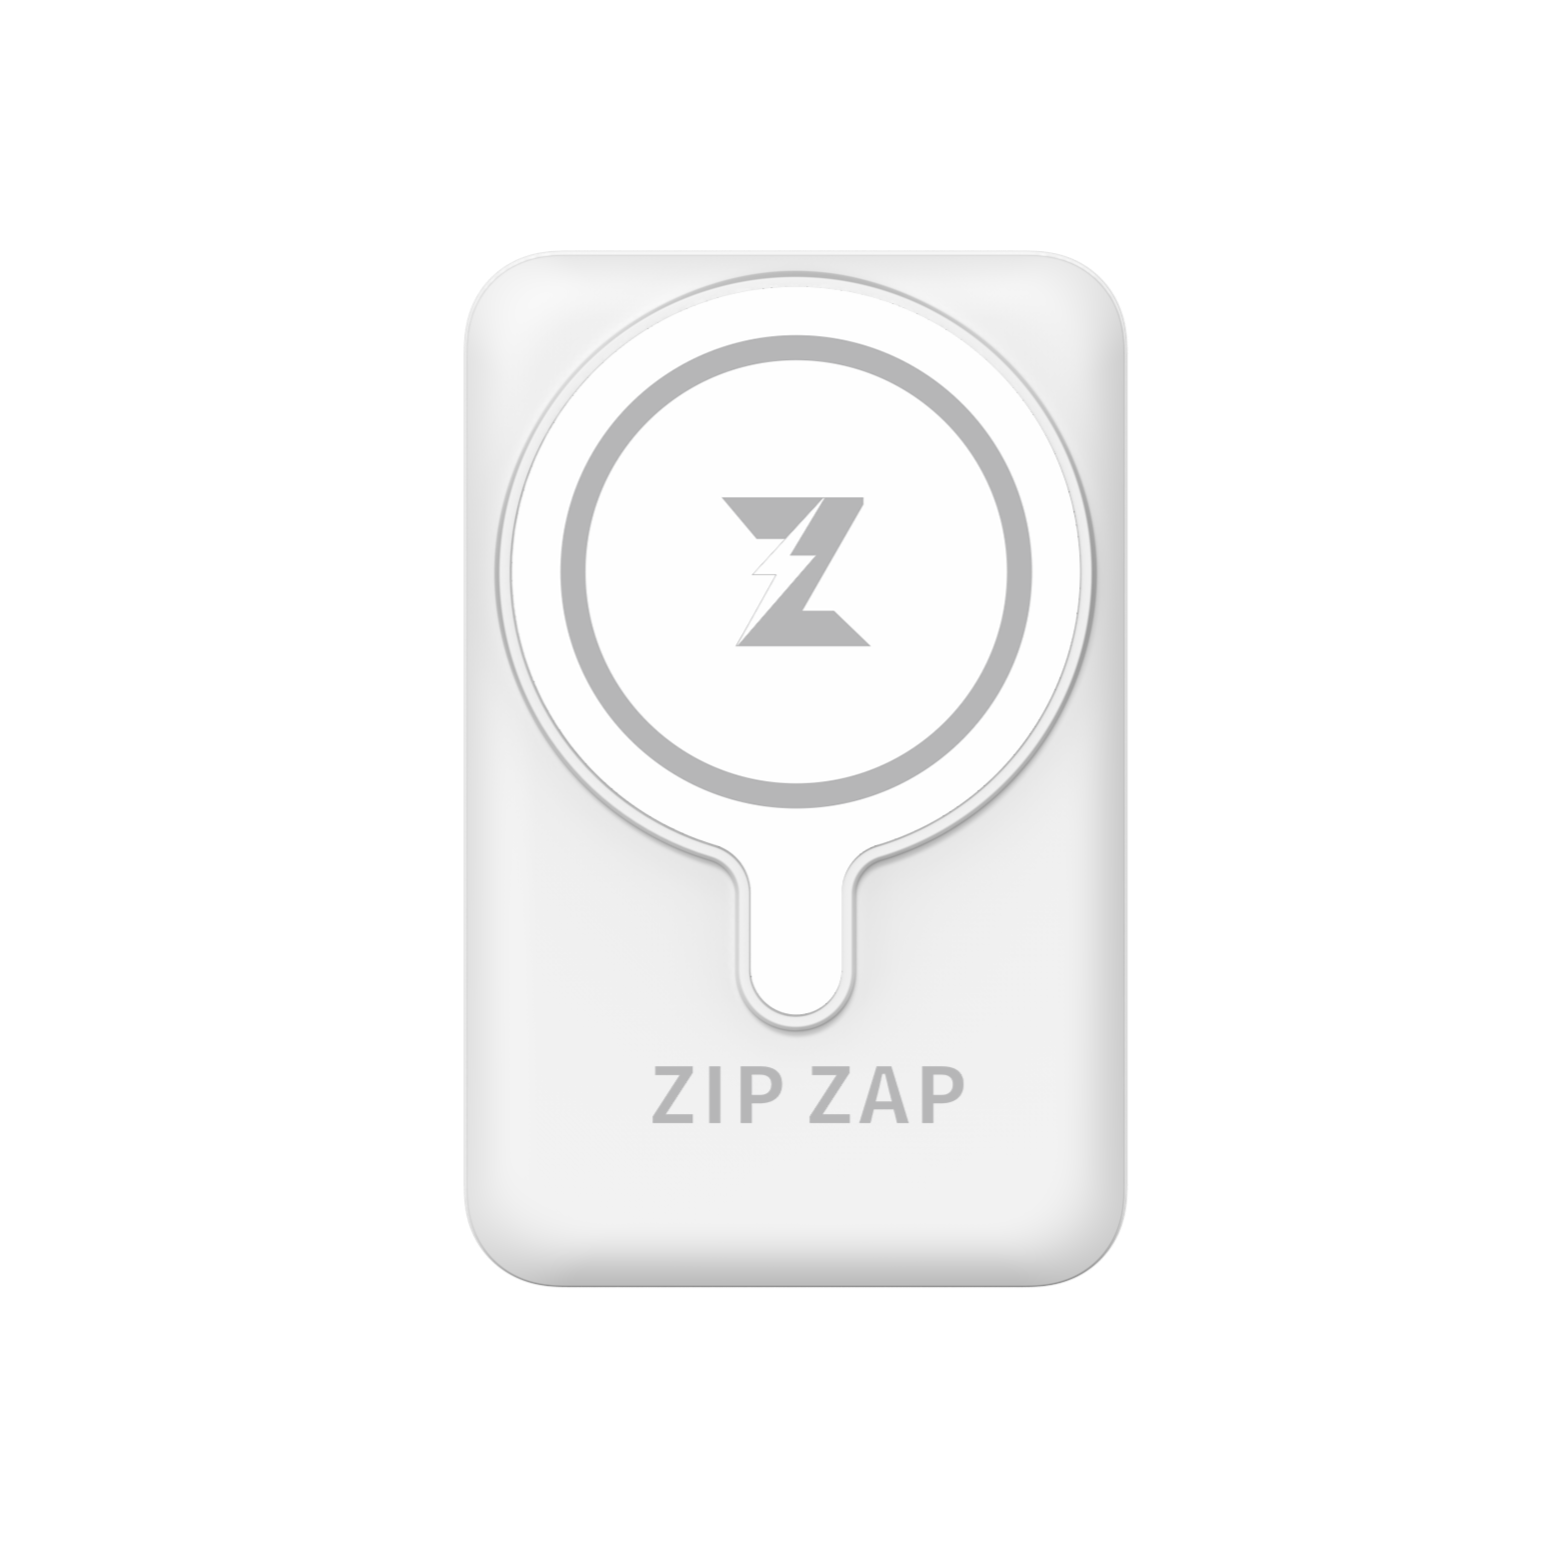 Zip Zap